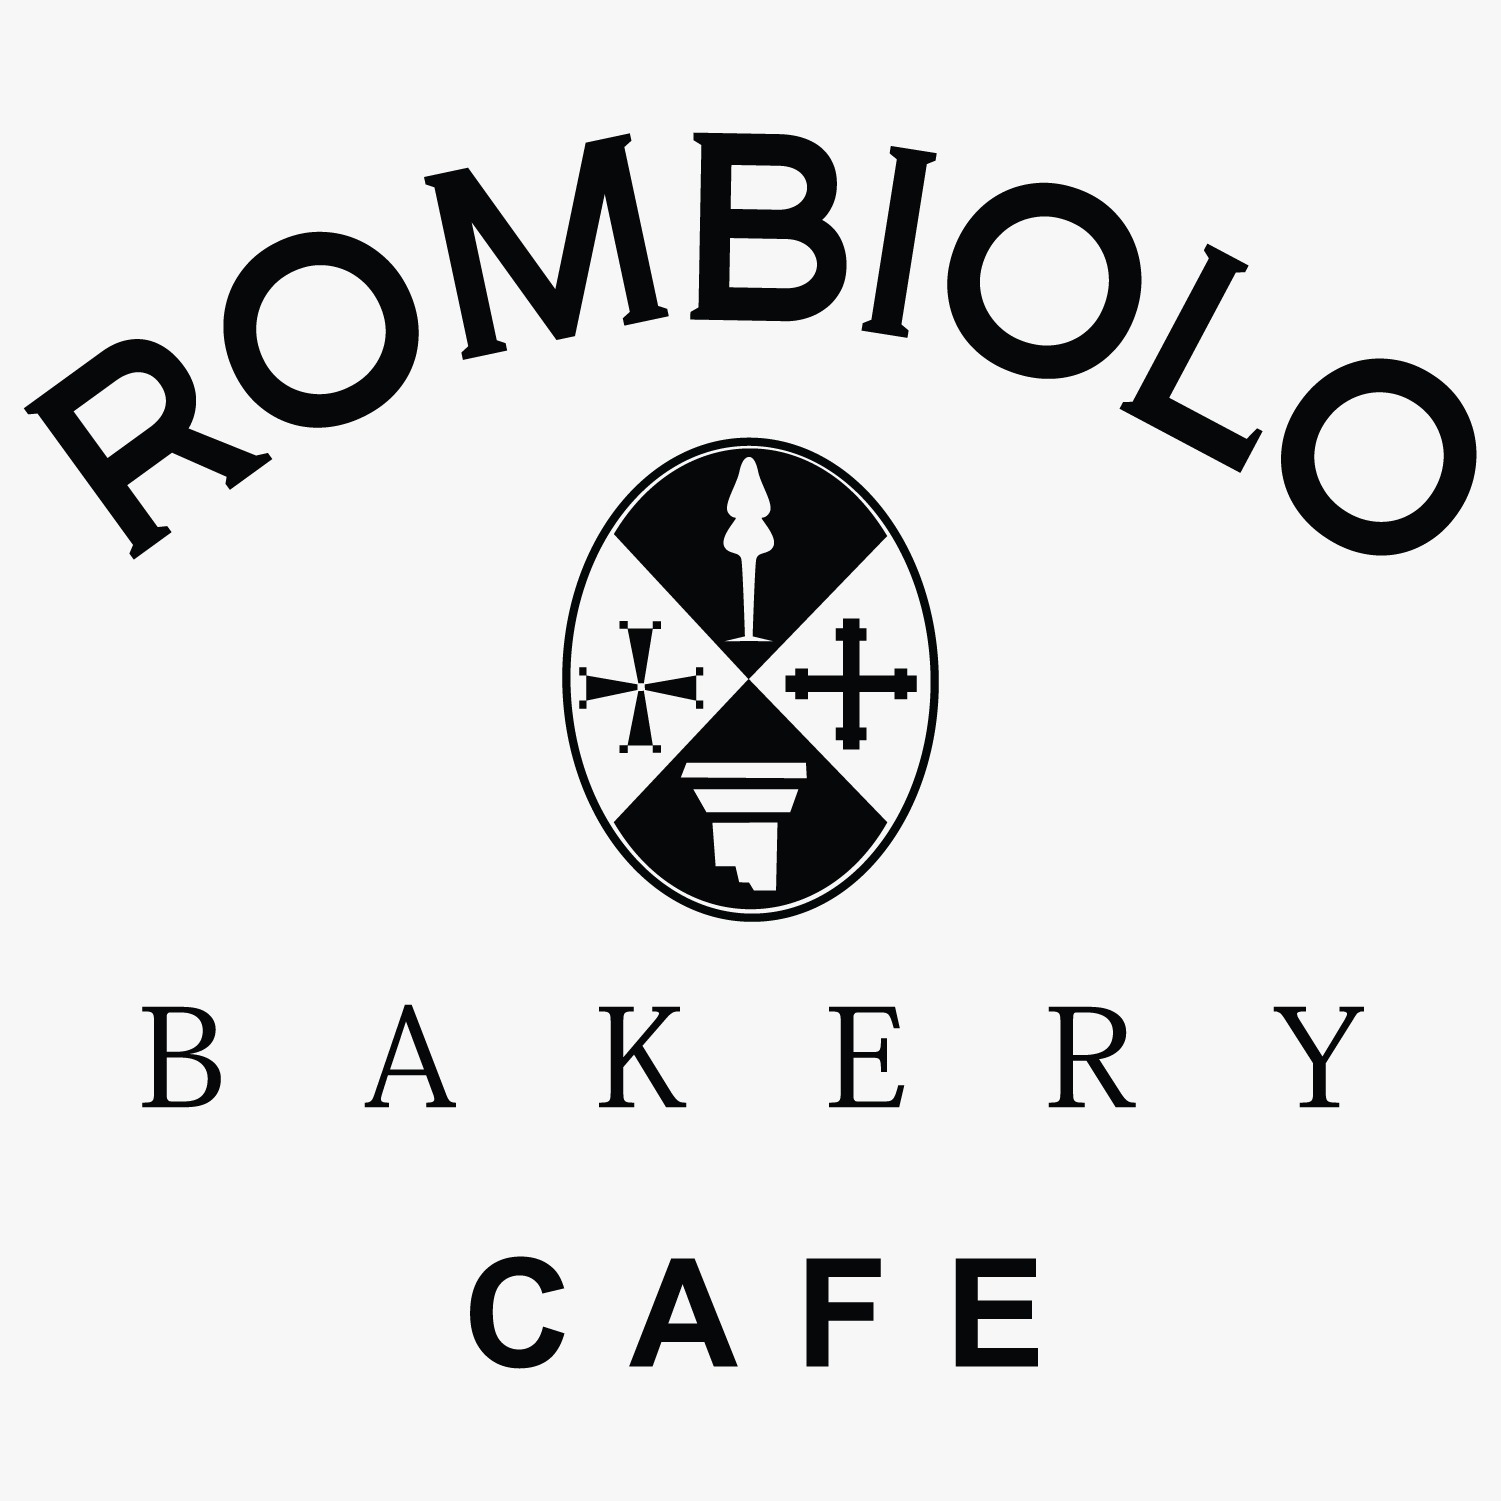 Rombiolo Bakery